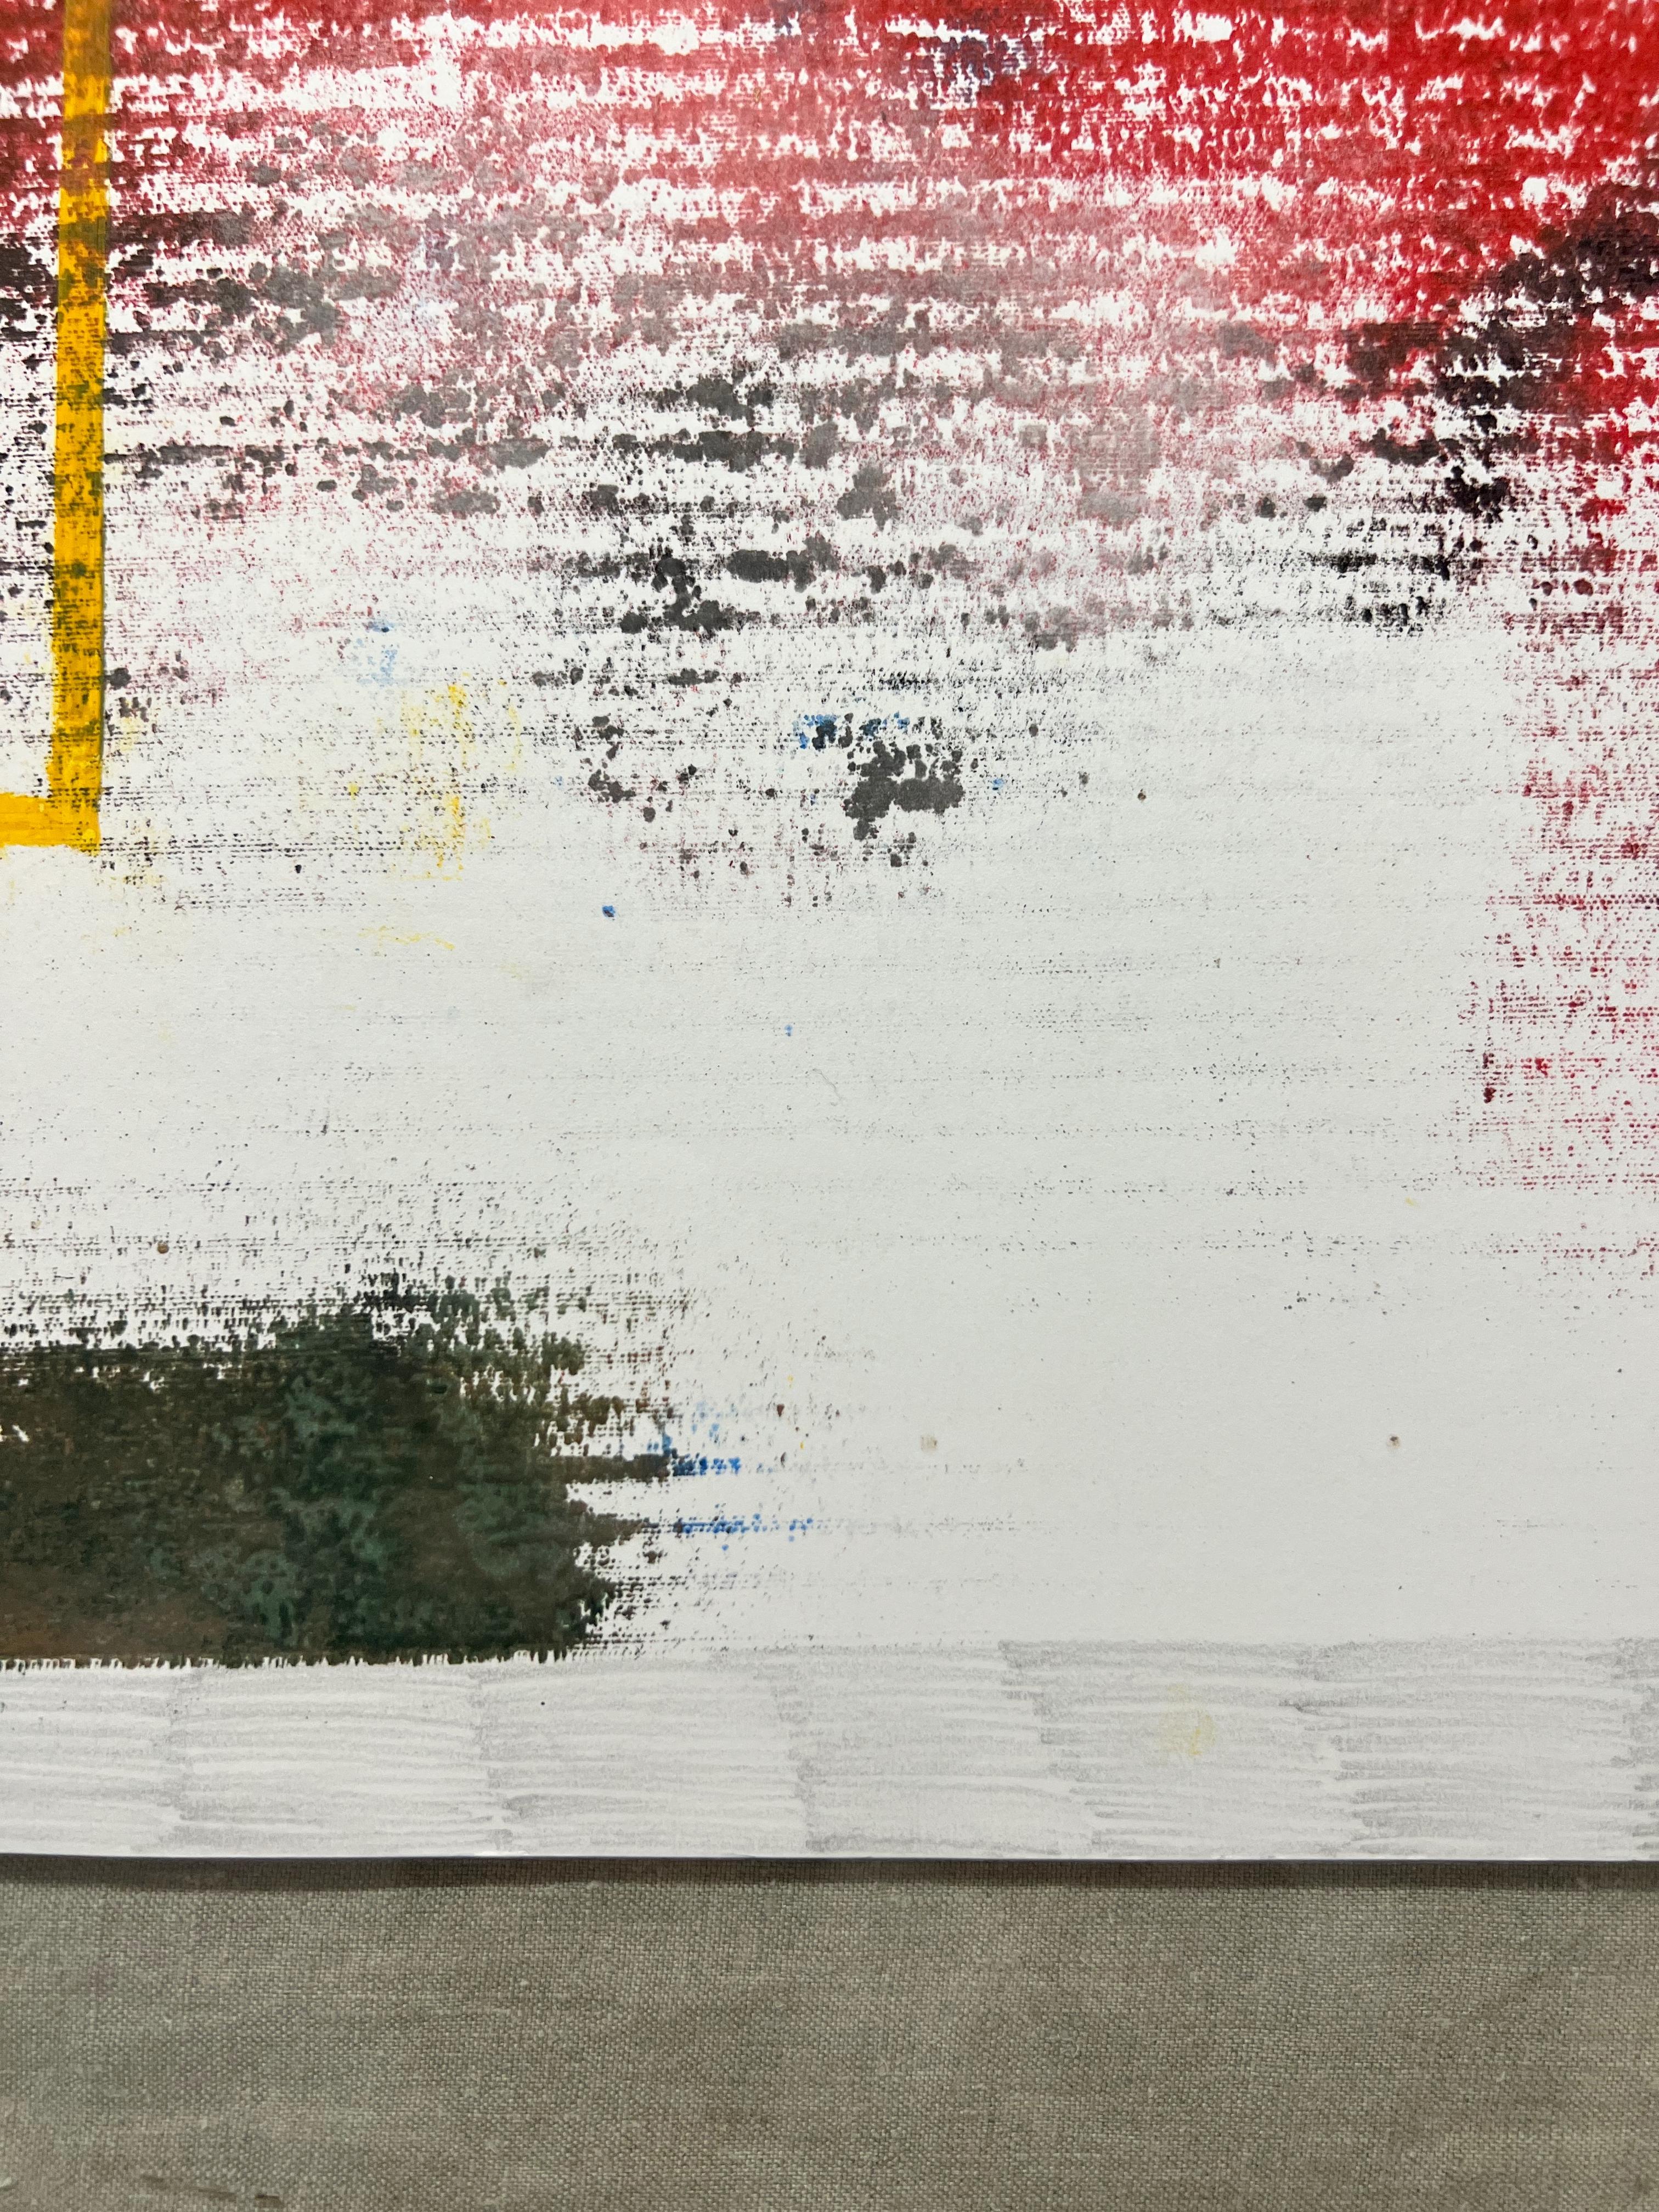 TUSET (1997, A Coruña, España)
Gemälde in Mischtechnik auf Papier
Fertig zum Einrahmen
Einzigartig
Signiert auf der Rückseite 
Inklusive Echtheitszertifikat
2021
65 x 50 cm.

Es gehört zur Reihe der persönlichen Tagebücher des Künstlers während der